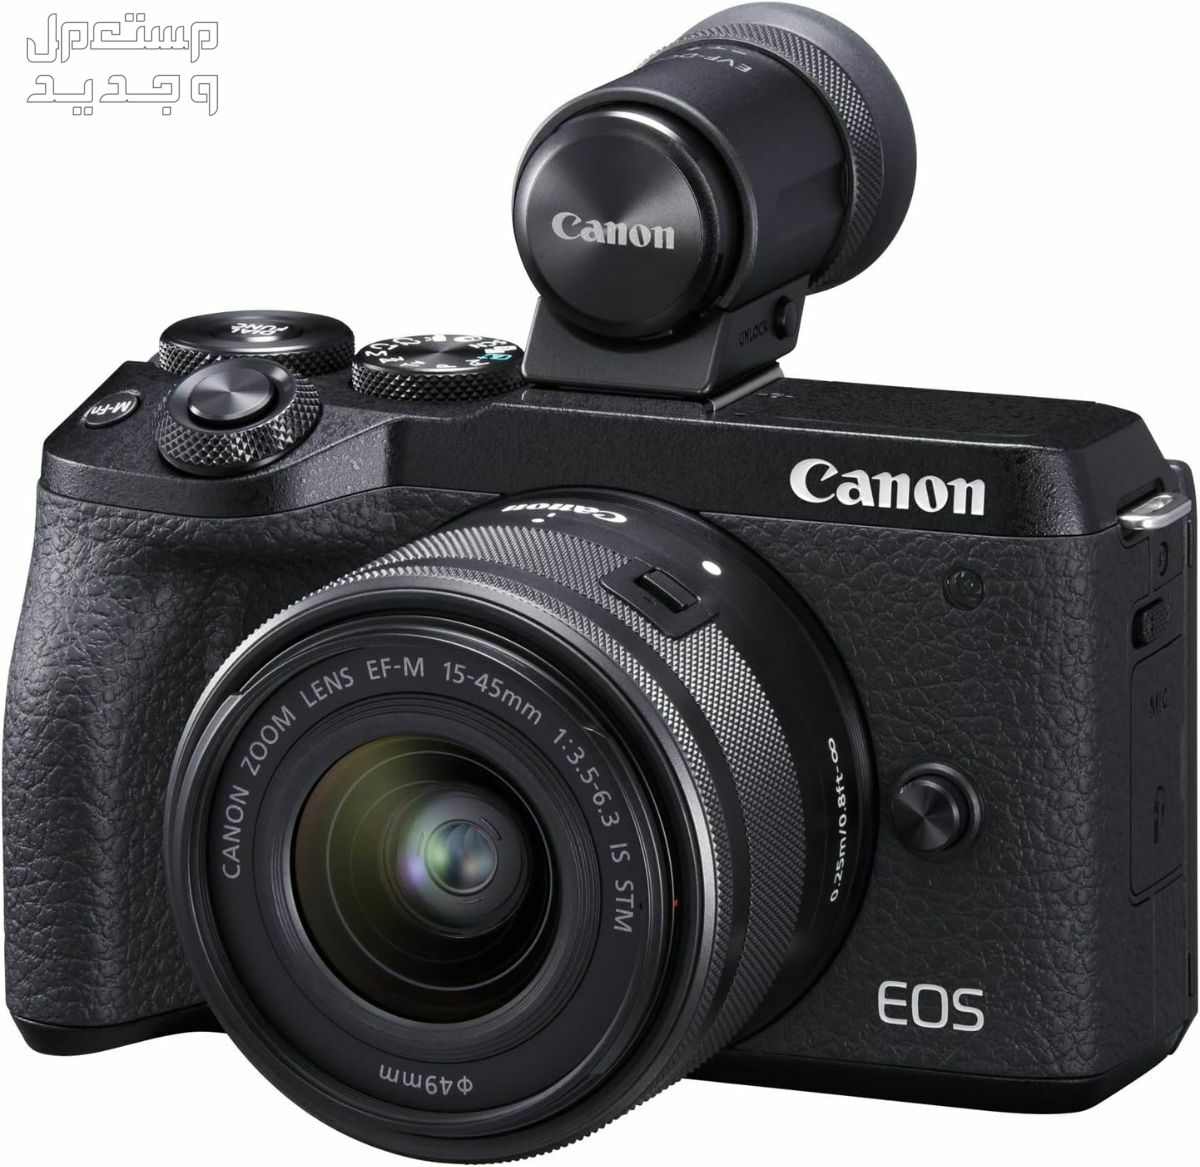 سعر ومميزات ومواصفات أرخص 5 كاميرات تصوير من كانون في مصر كاميرا Canon EOS M6 Mark II